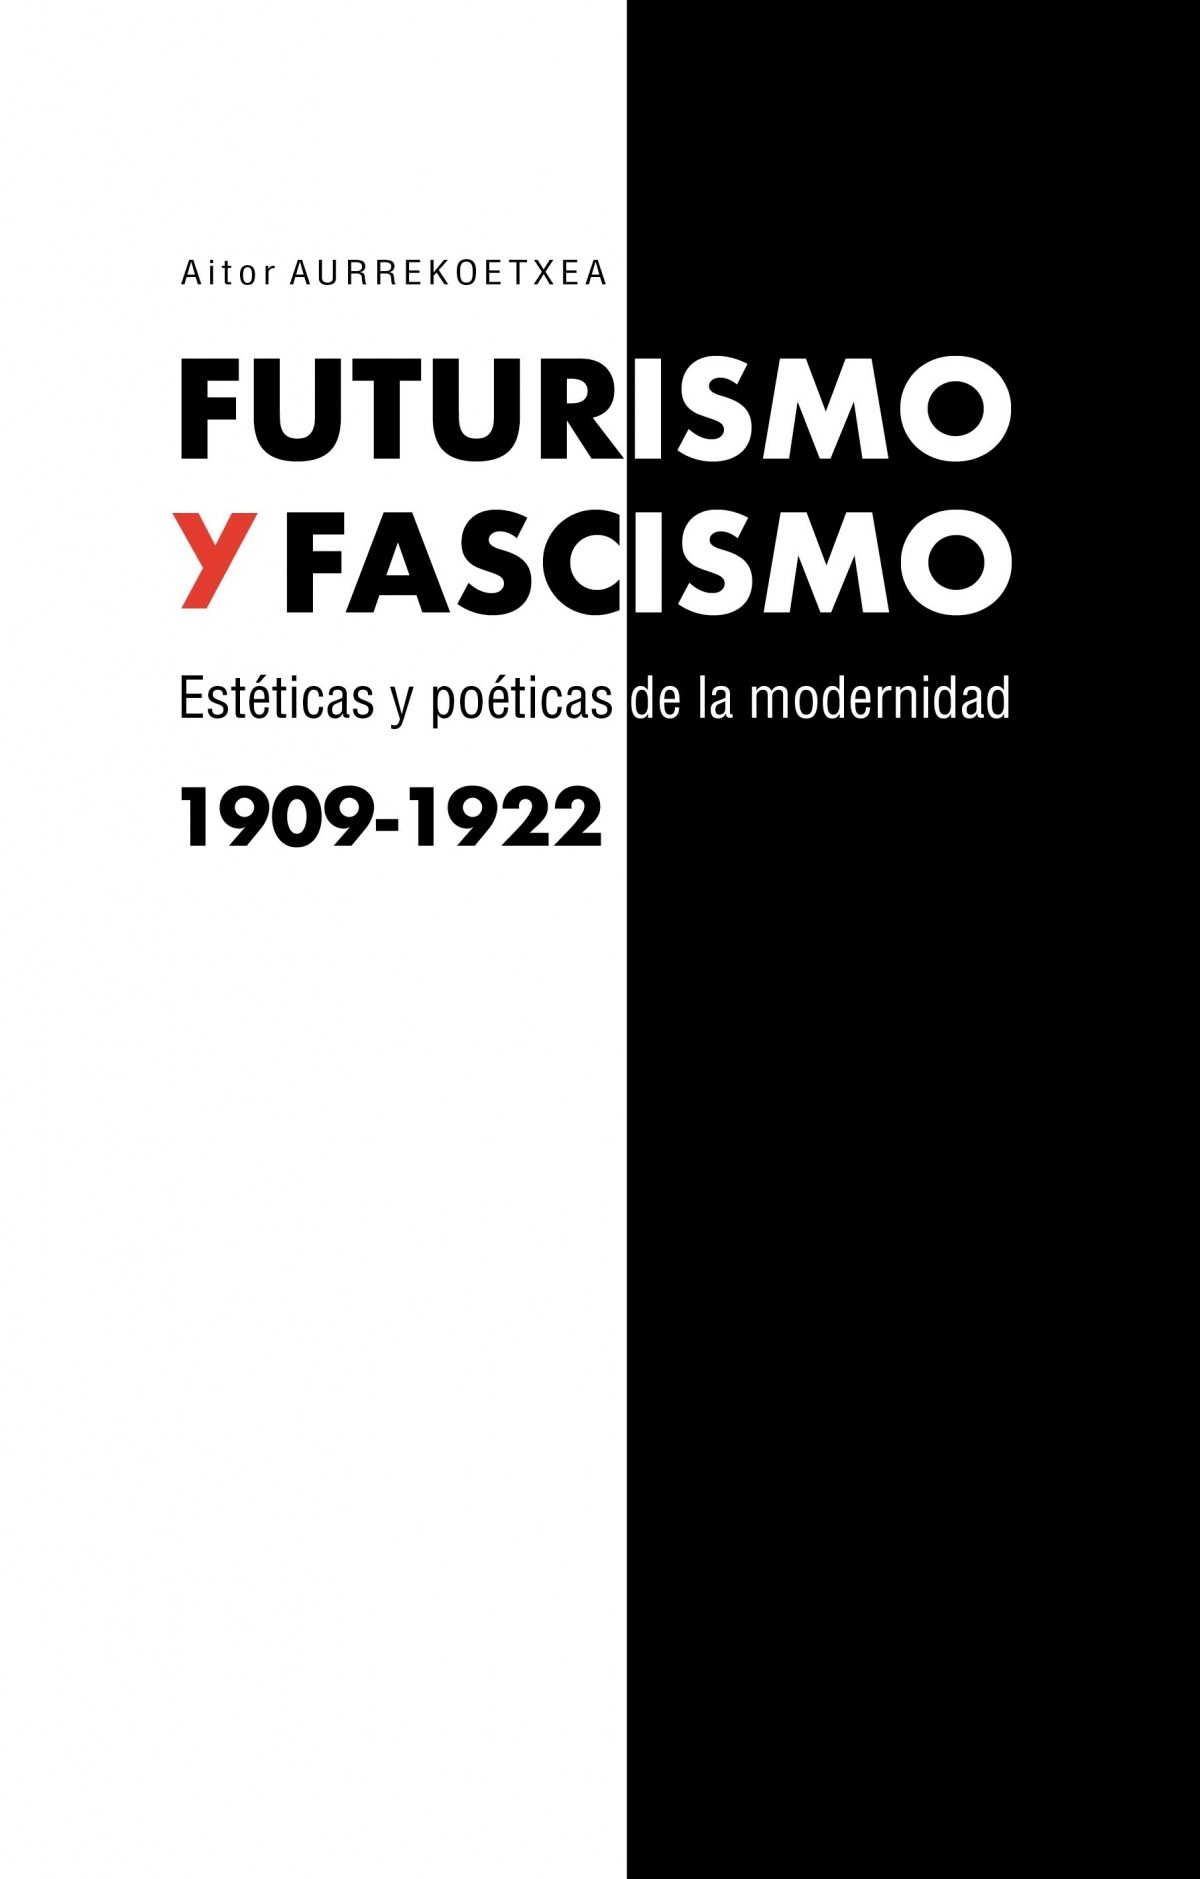 FUTURISMO Y FASCISMO Estéticas y poéticas de la modernidad 1909-1922 - Aurrekoetxea, Aitor